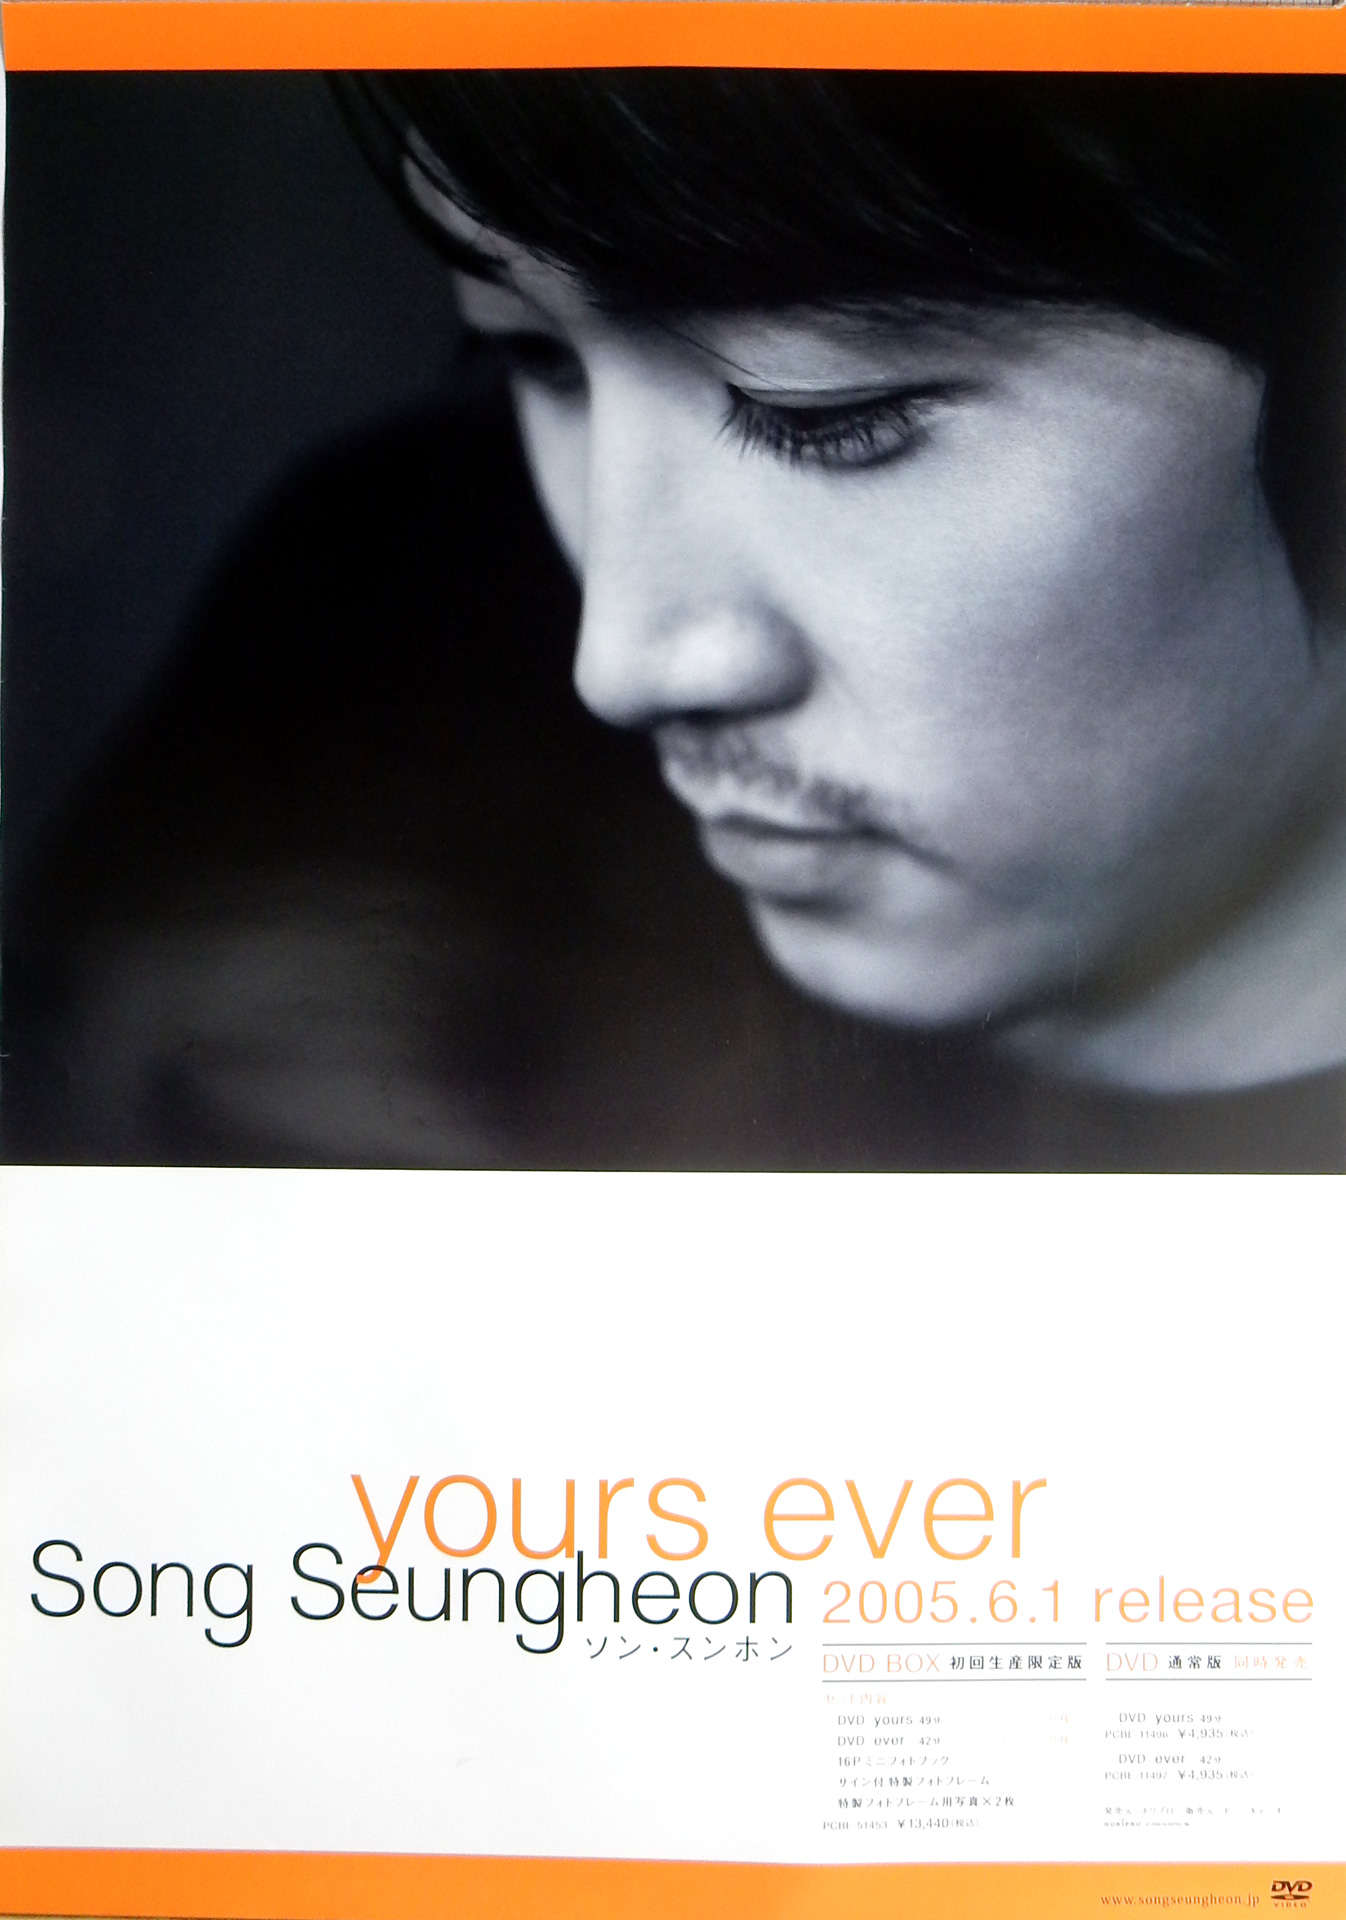 ソン・スンホン 「yours ever」のポスター